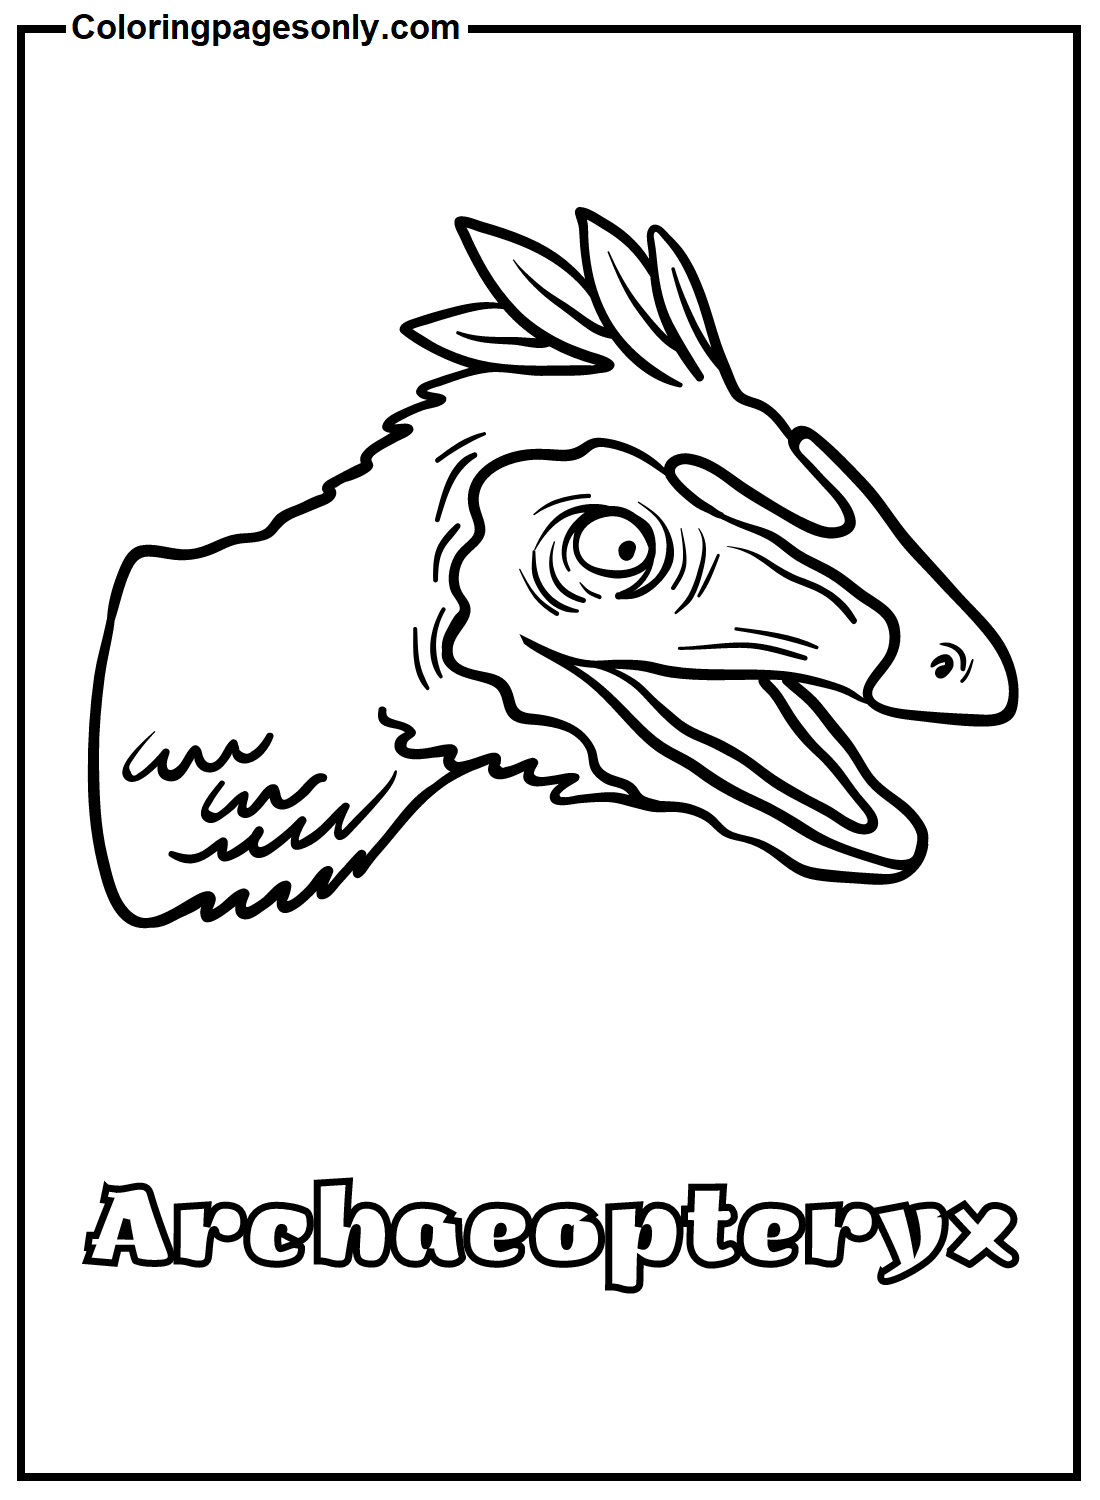 Desenho para Colorir de Arqueópterix Imprimível Gratuitamente